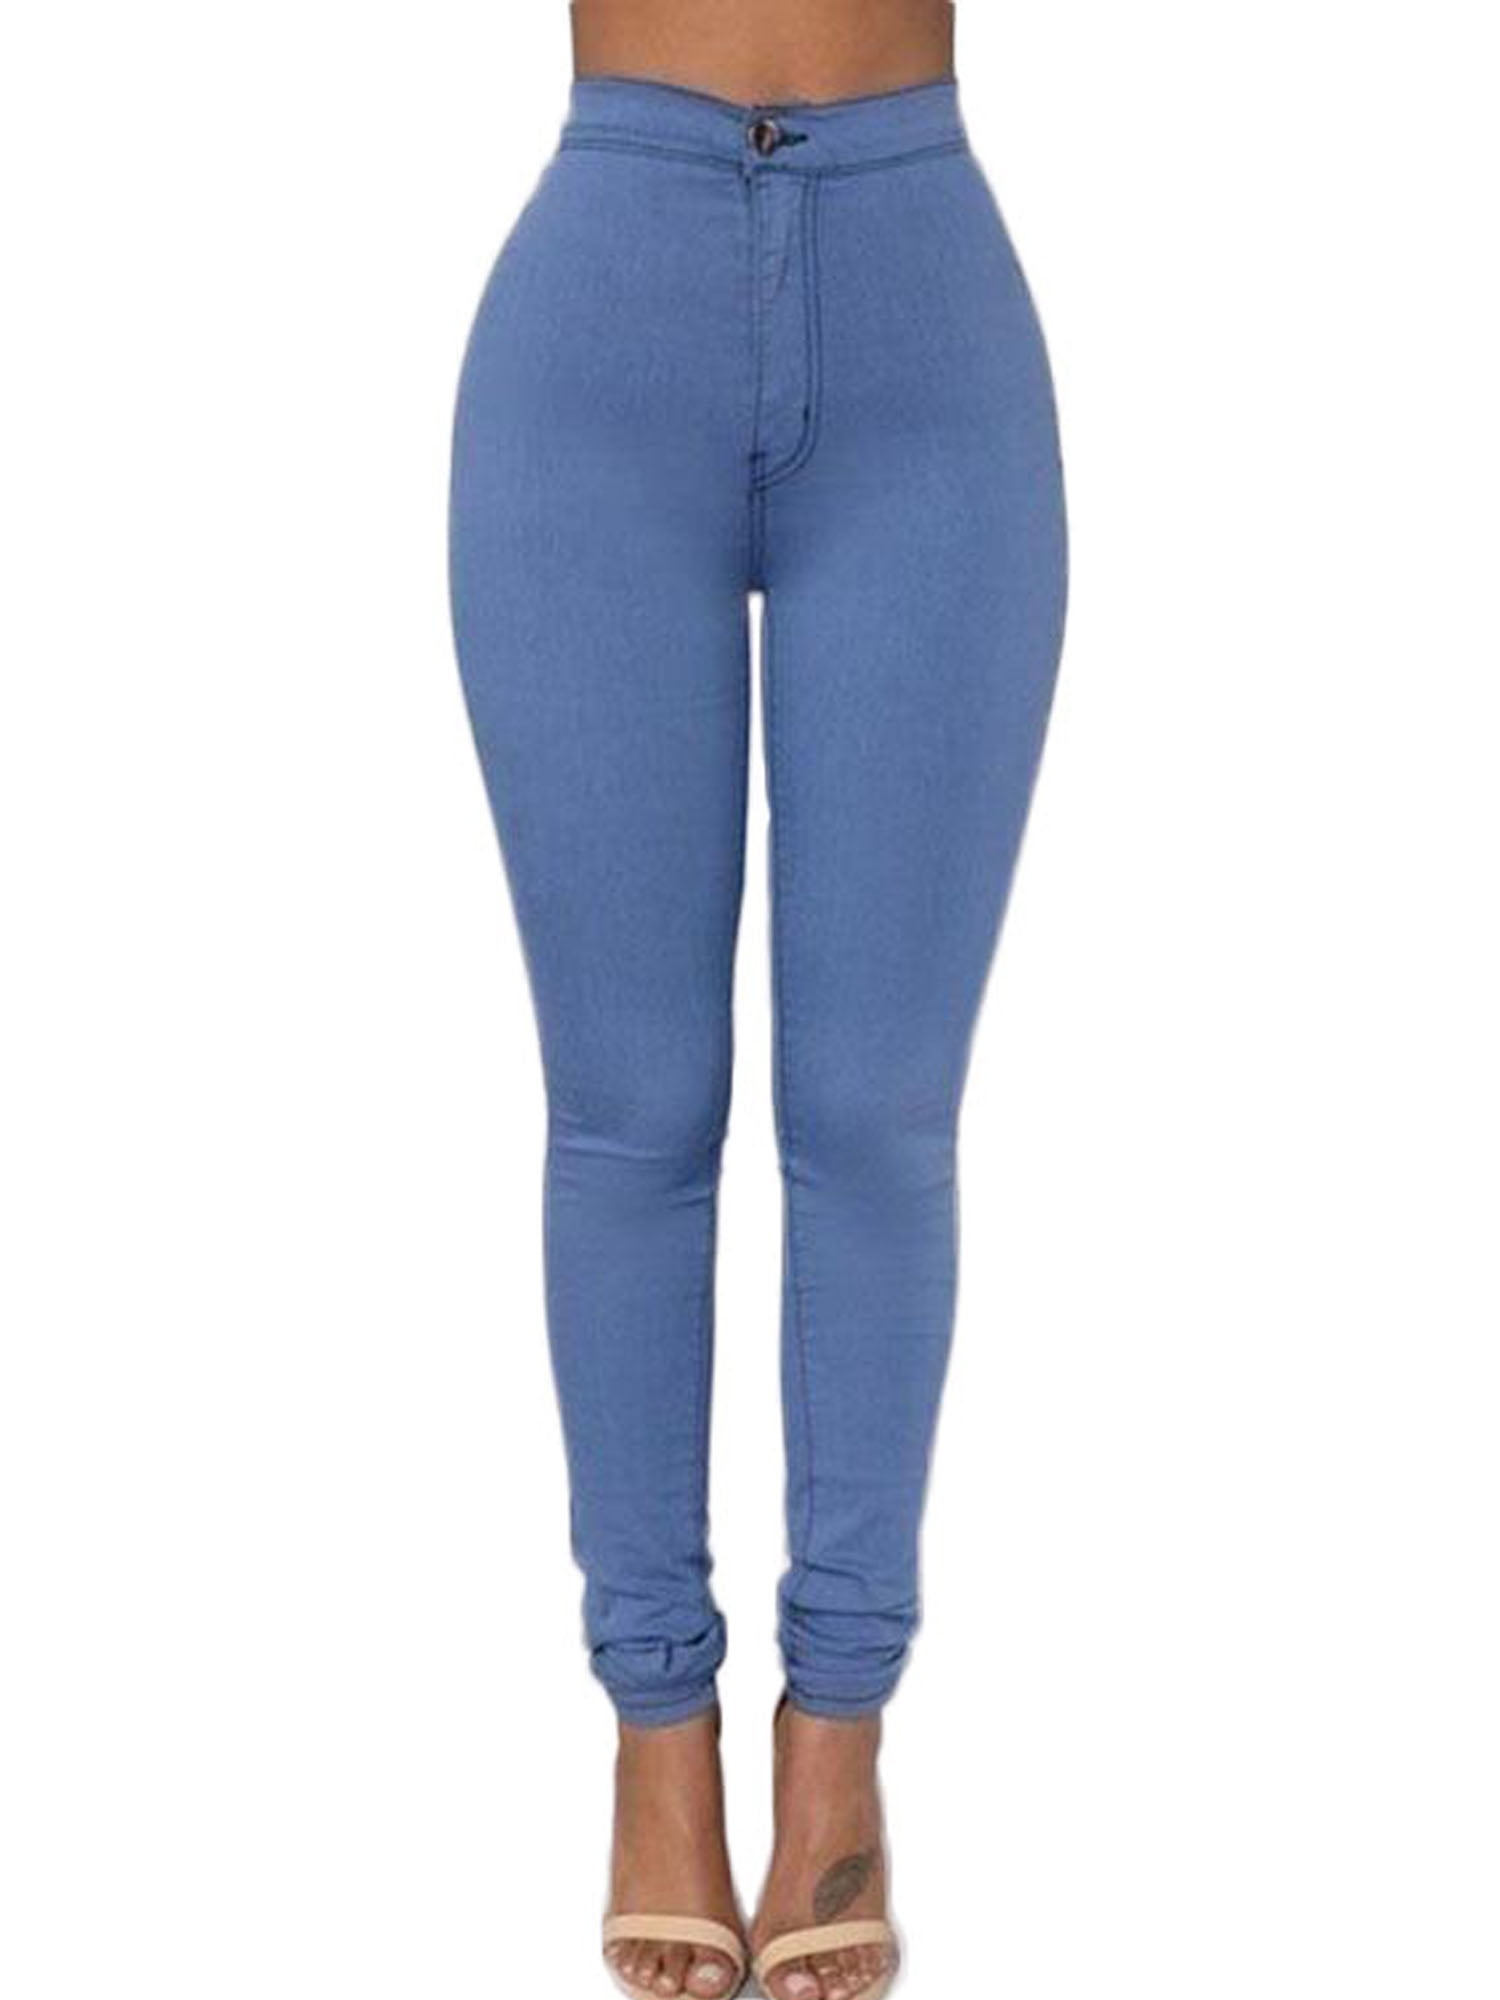 Size 8 Long Women's Jeans